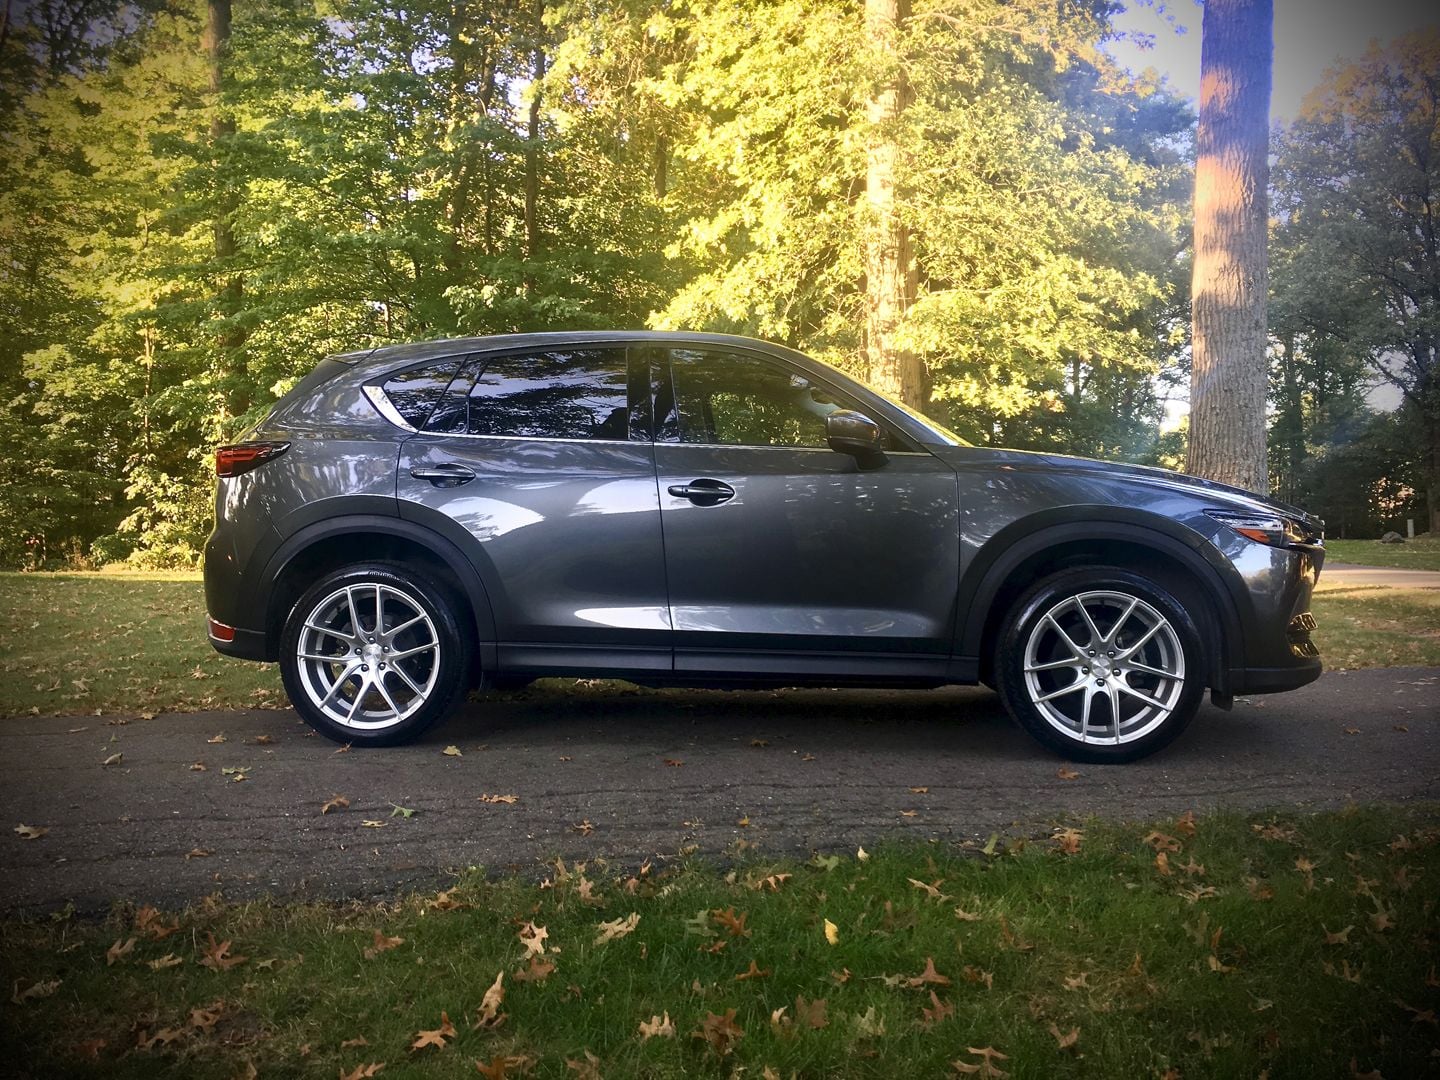 bigger wheels & tires + 2019 Mazda3 + 2017 Mazda CX5